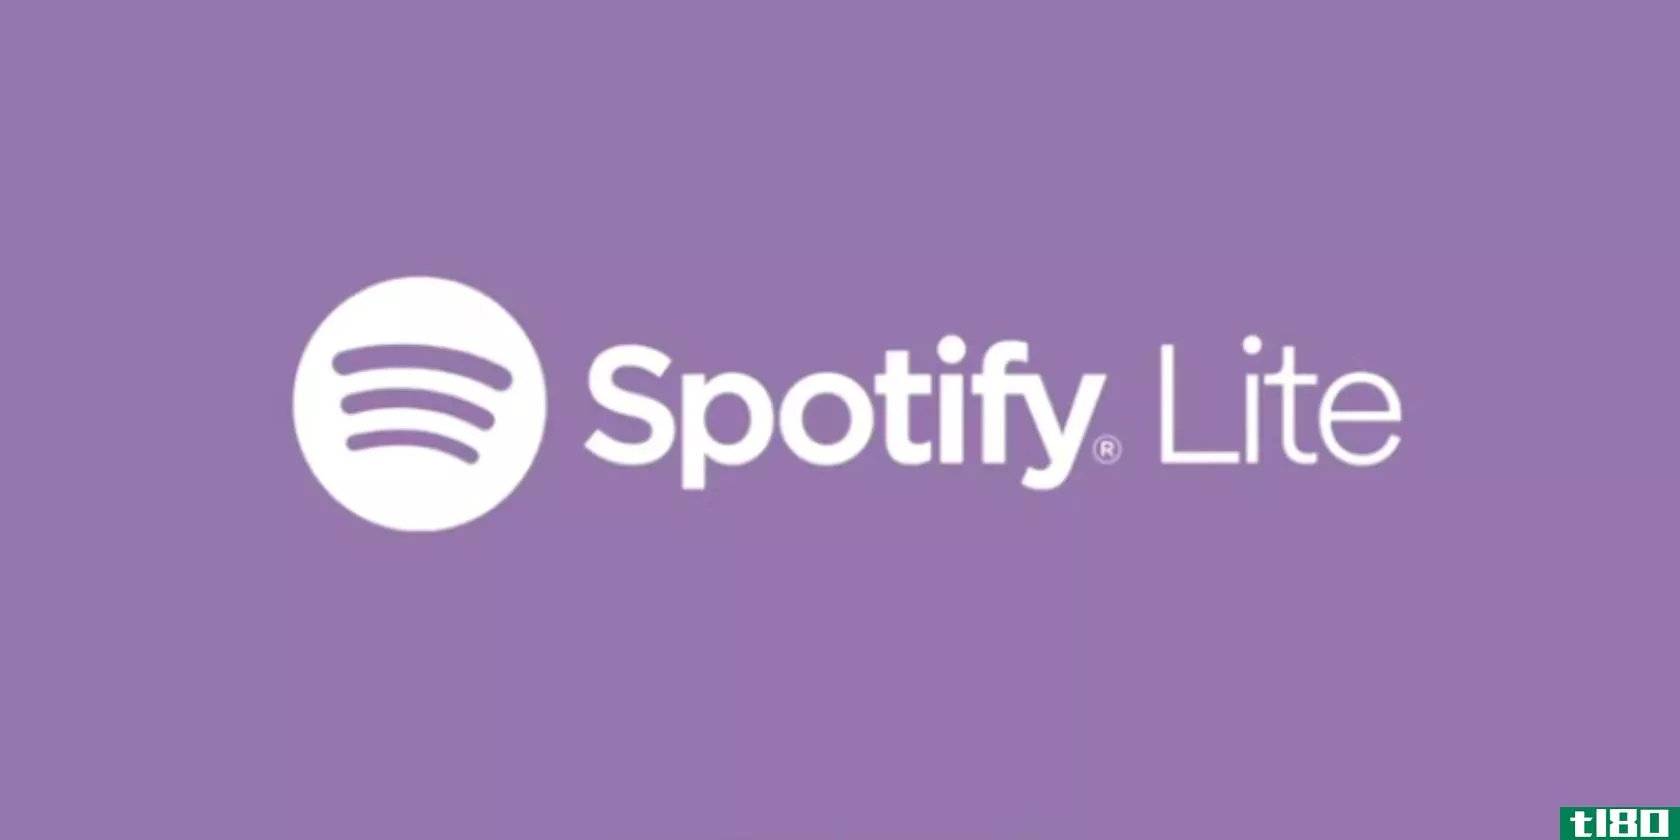 spotify-lite-app-logo